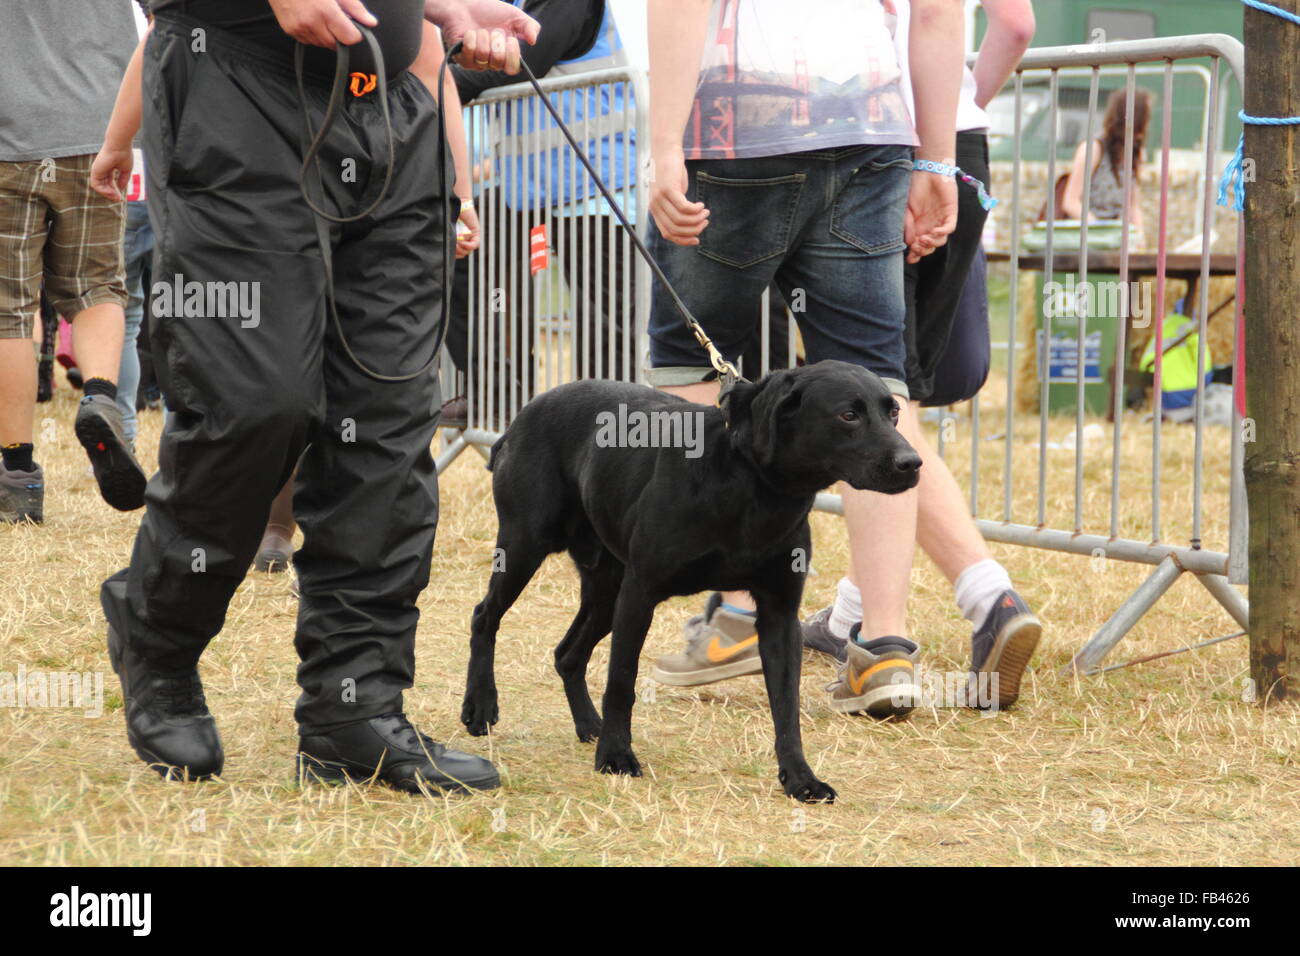 Ein Sniffer Hund und Hundeführer Suche nach illegalen Drogen am Y nicht Musik Festival Eingang während der routinemäßigen Sicherheitskontrolle, UK Stockfoto